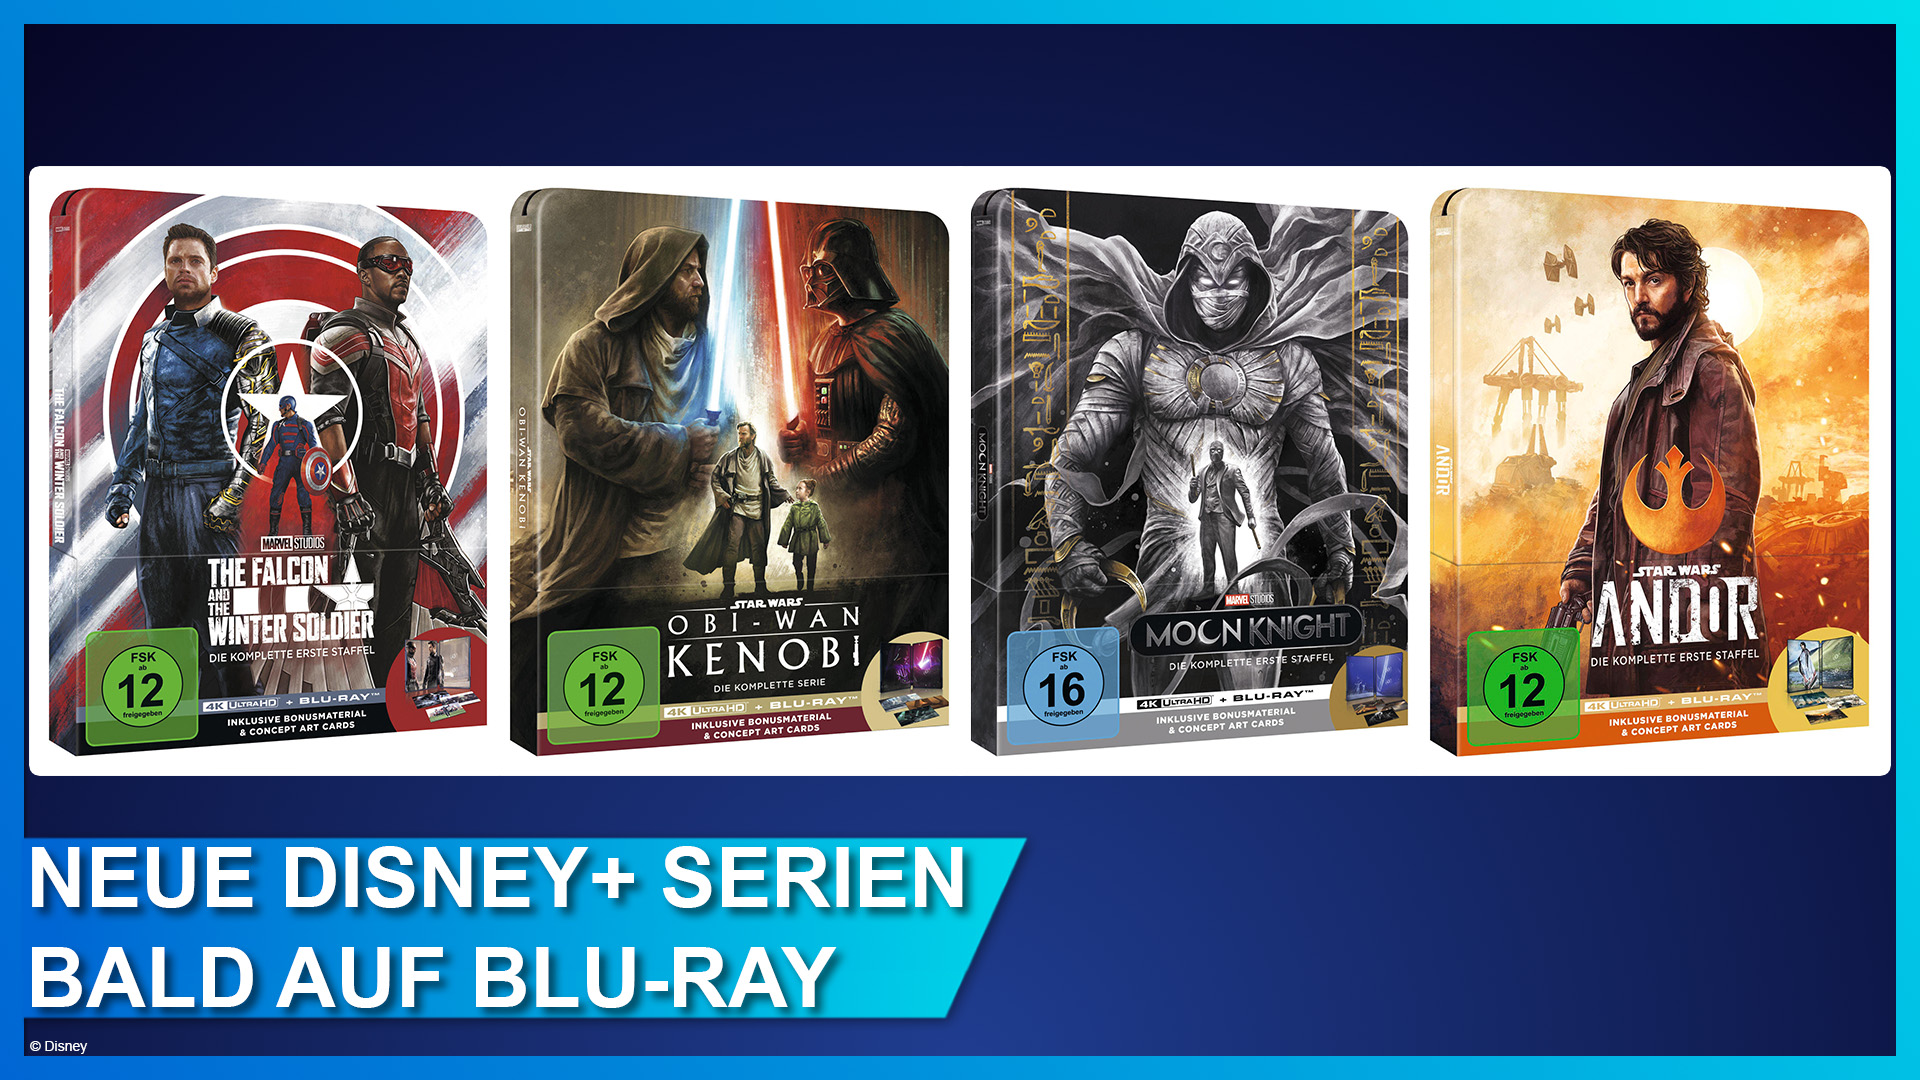 Neue Marvel und Star Wars Serien im 4K UHD Blu-ray Steelbook: Obi-Wan Kenobi, Andor, Moon Knight und The Falcon and the Winter Soldier